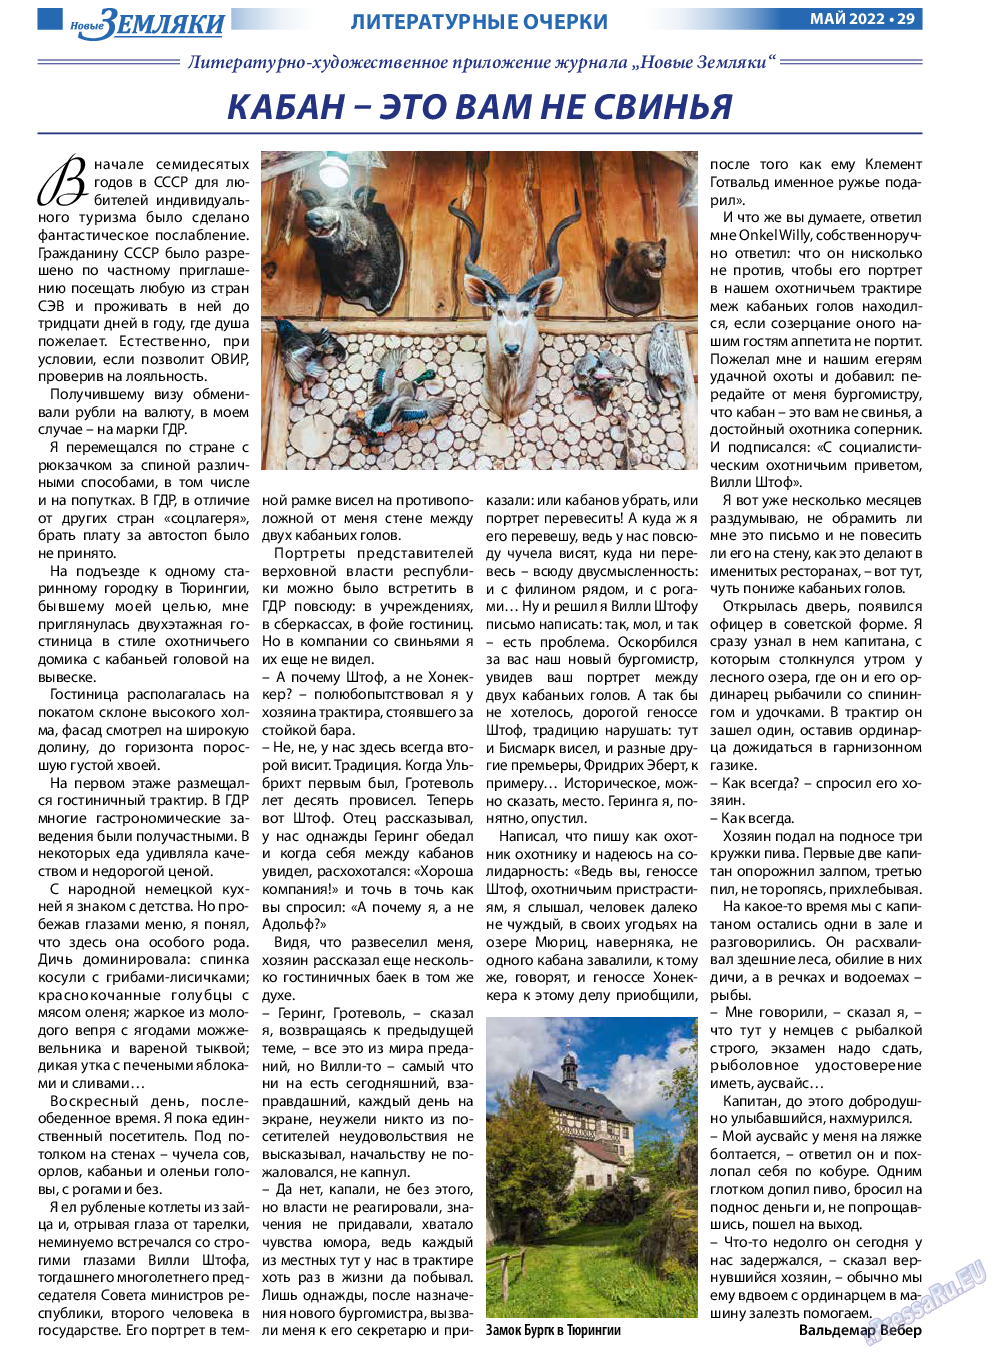 Новые Земляки, газета. 2022 №5 стр.29